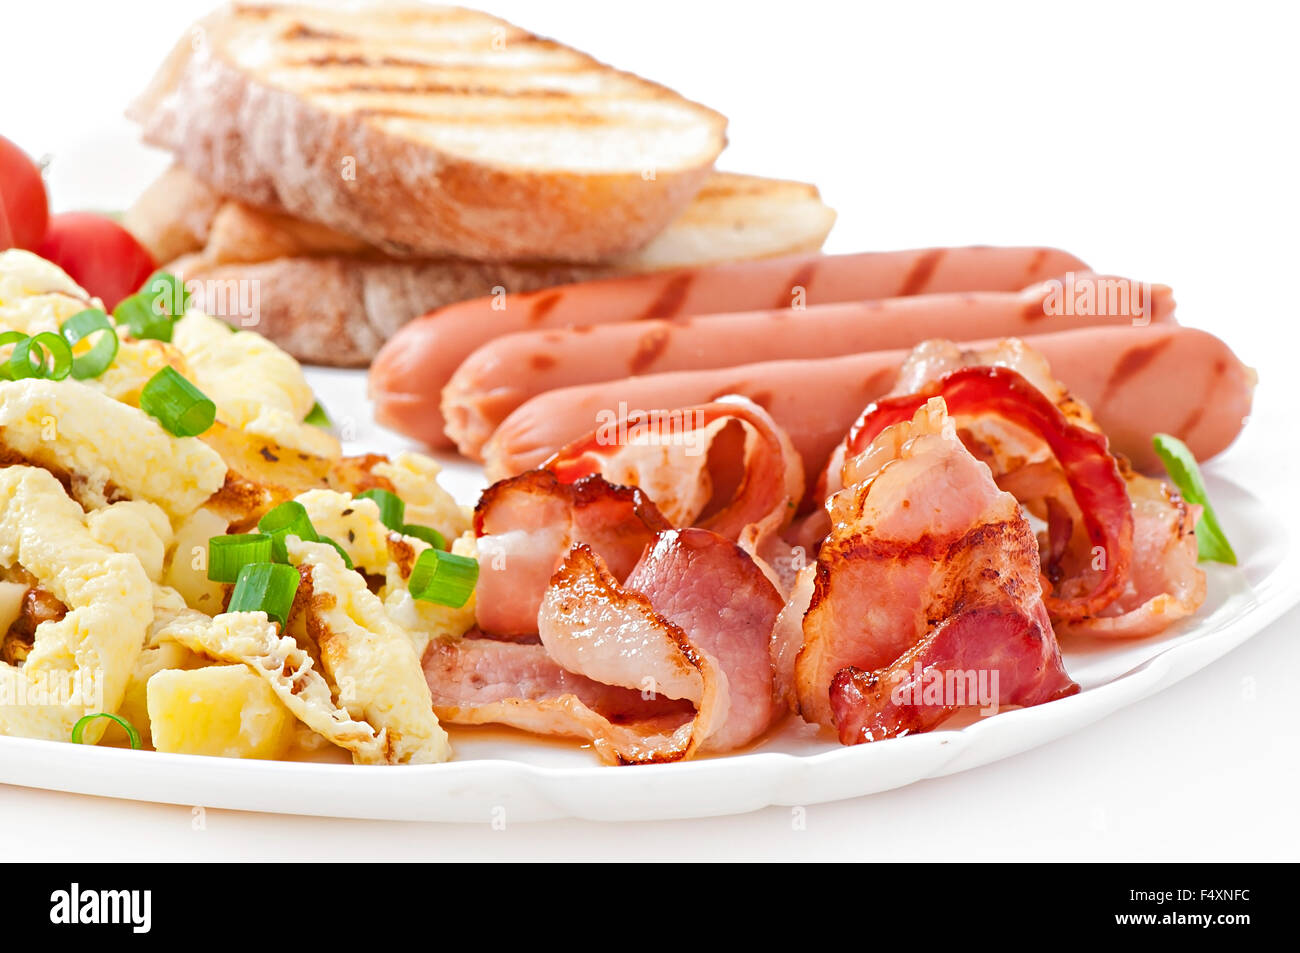 Petit-déjeuner anglais - oeufs brouillés, bacon, saucisses et toasts Banque D'Images